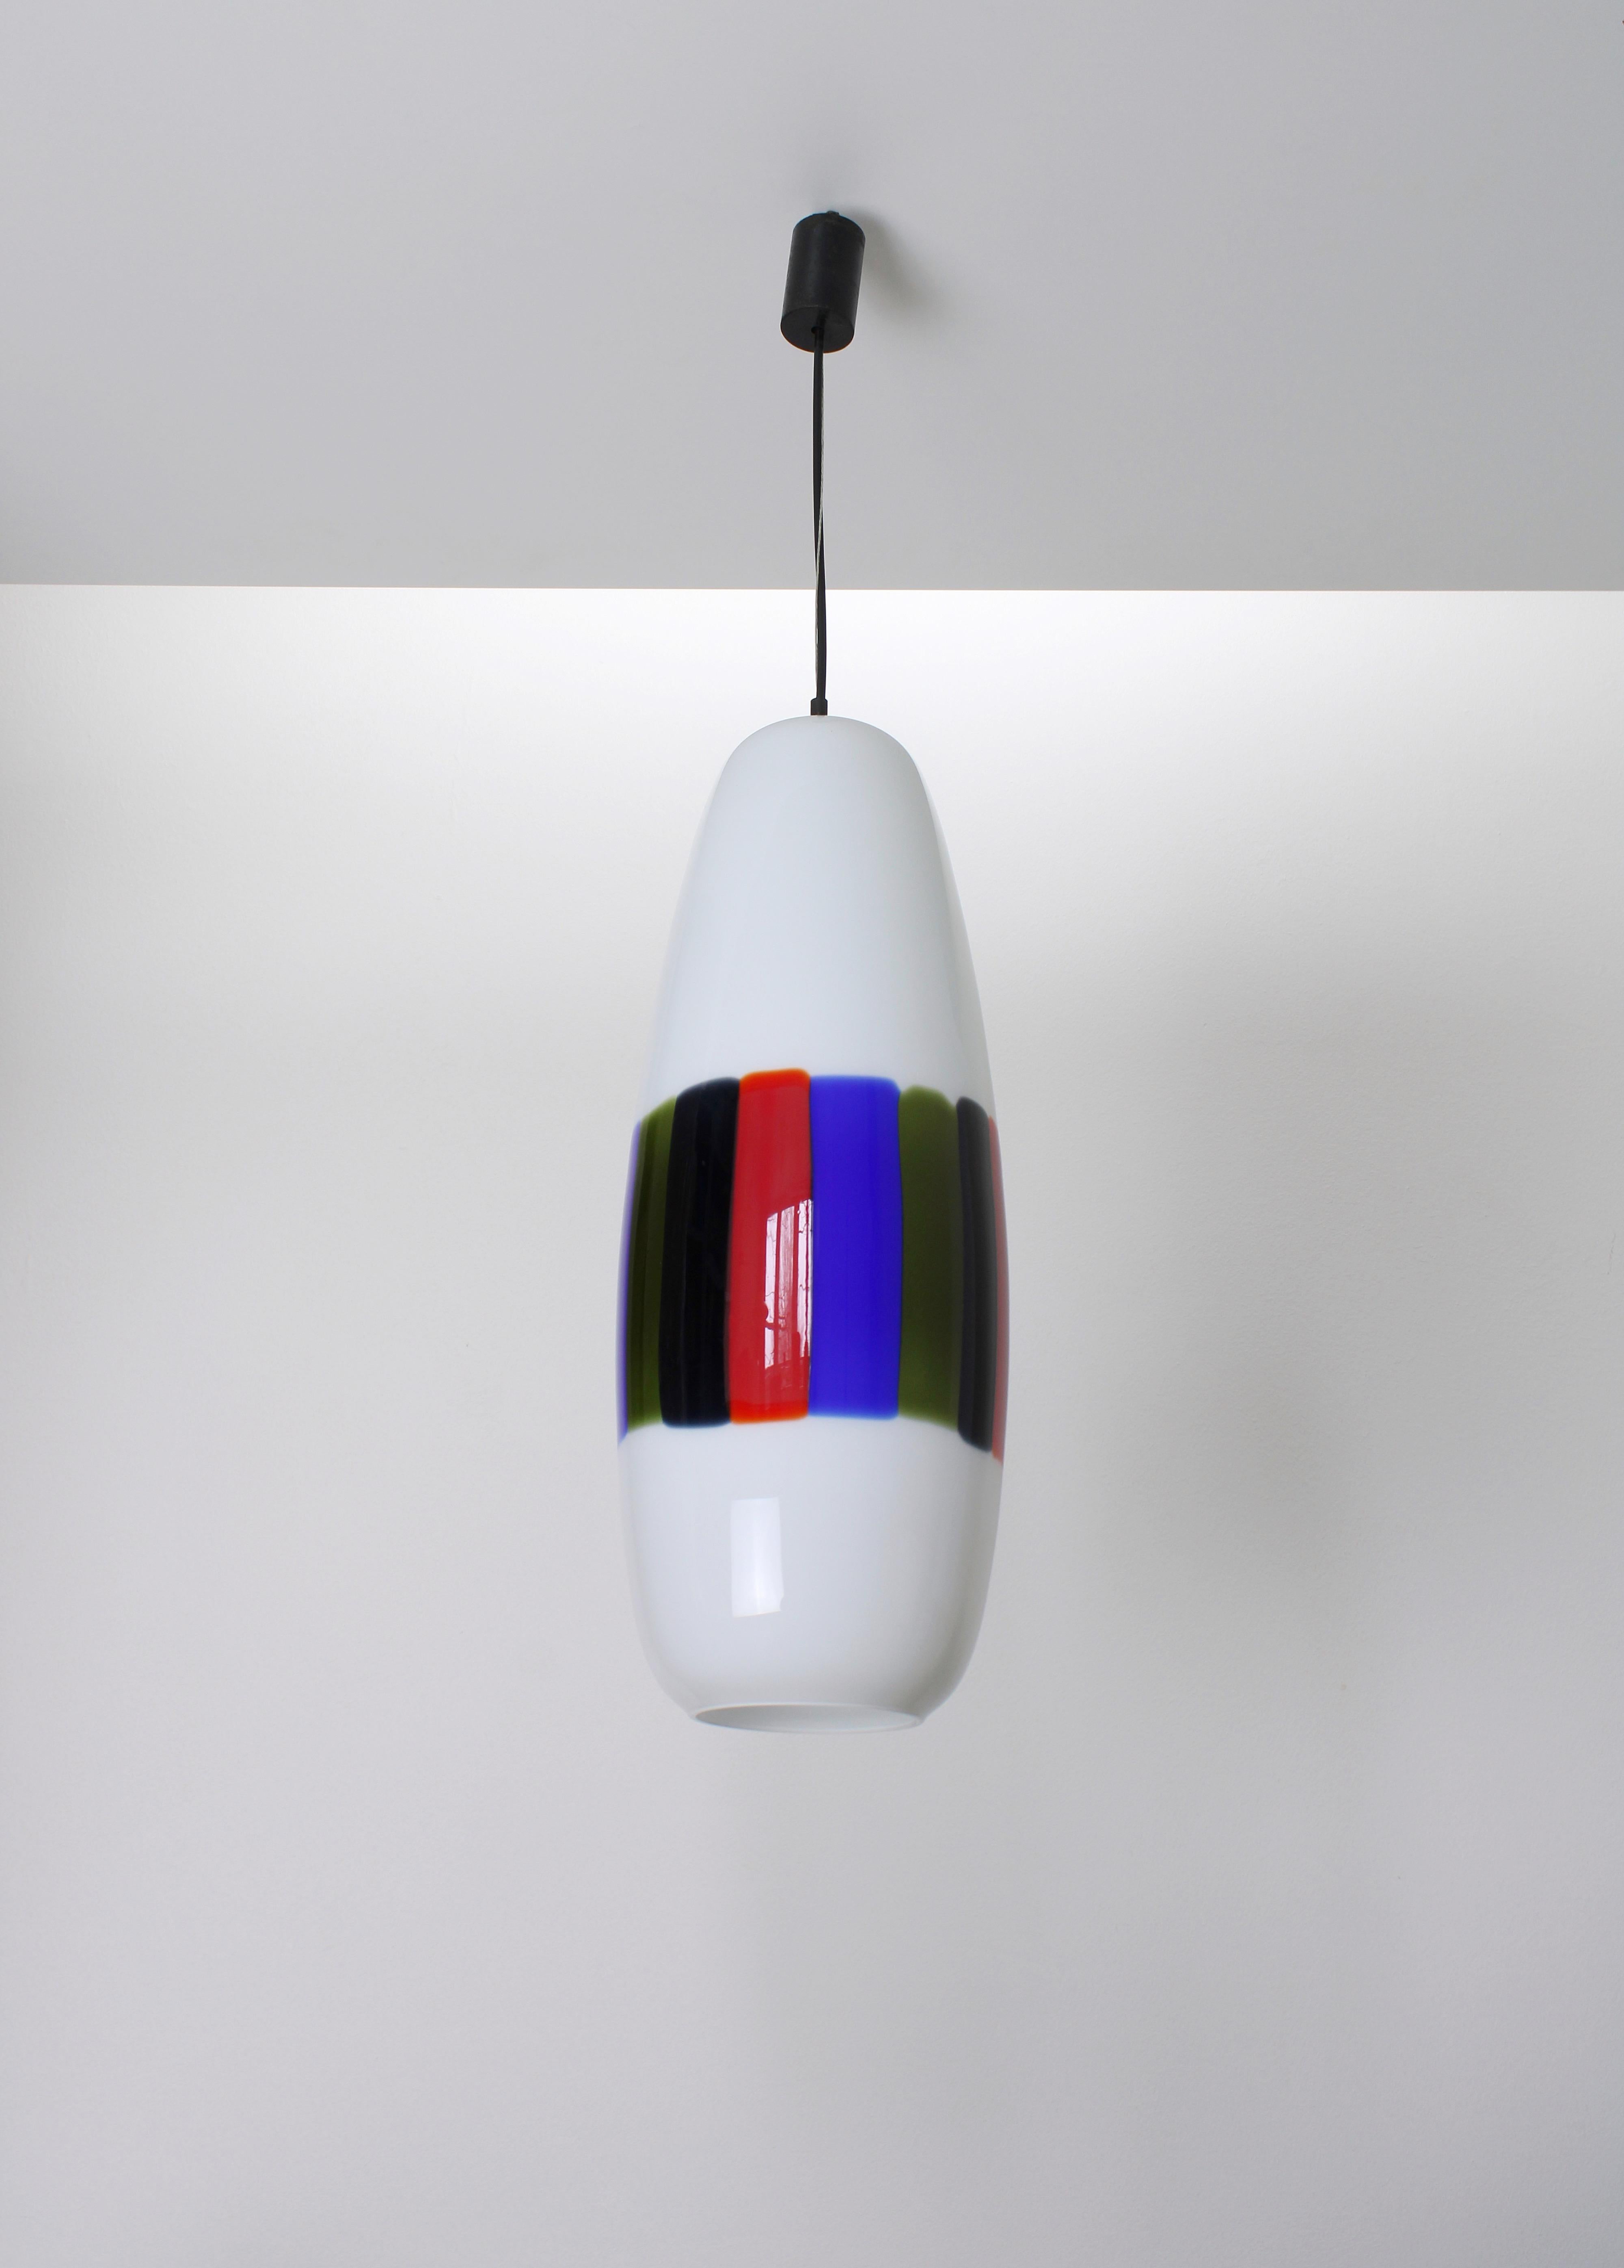 Große Hängeleuchte Modell L-143 aus Murano-Glas. Entworfen von Alessandro Pianon für Vistosi in Murano in den 1960er Jahren. Handgefertigter, runder Zylinder aus weißem Glas mit grünen, blauen, roten und schwarzen Streifen. Diese Lampe ist in einem